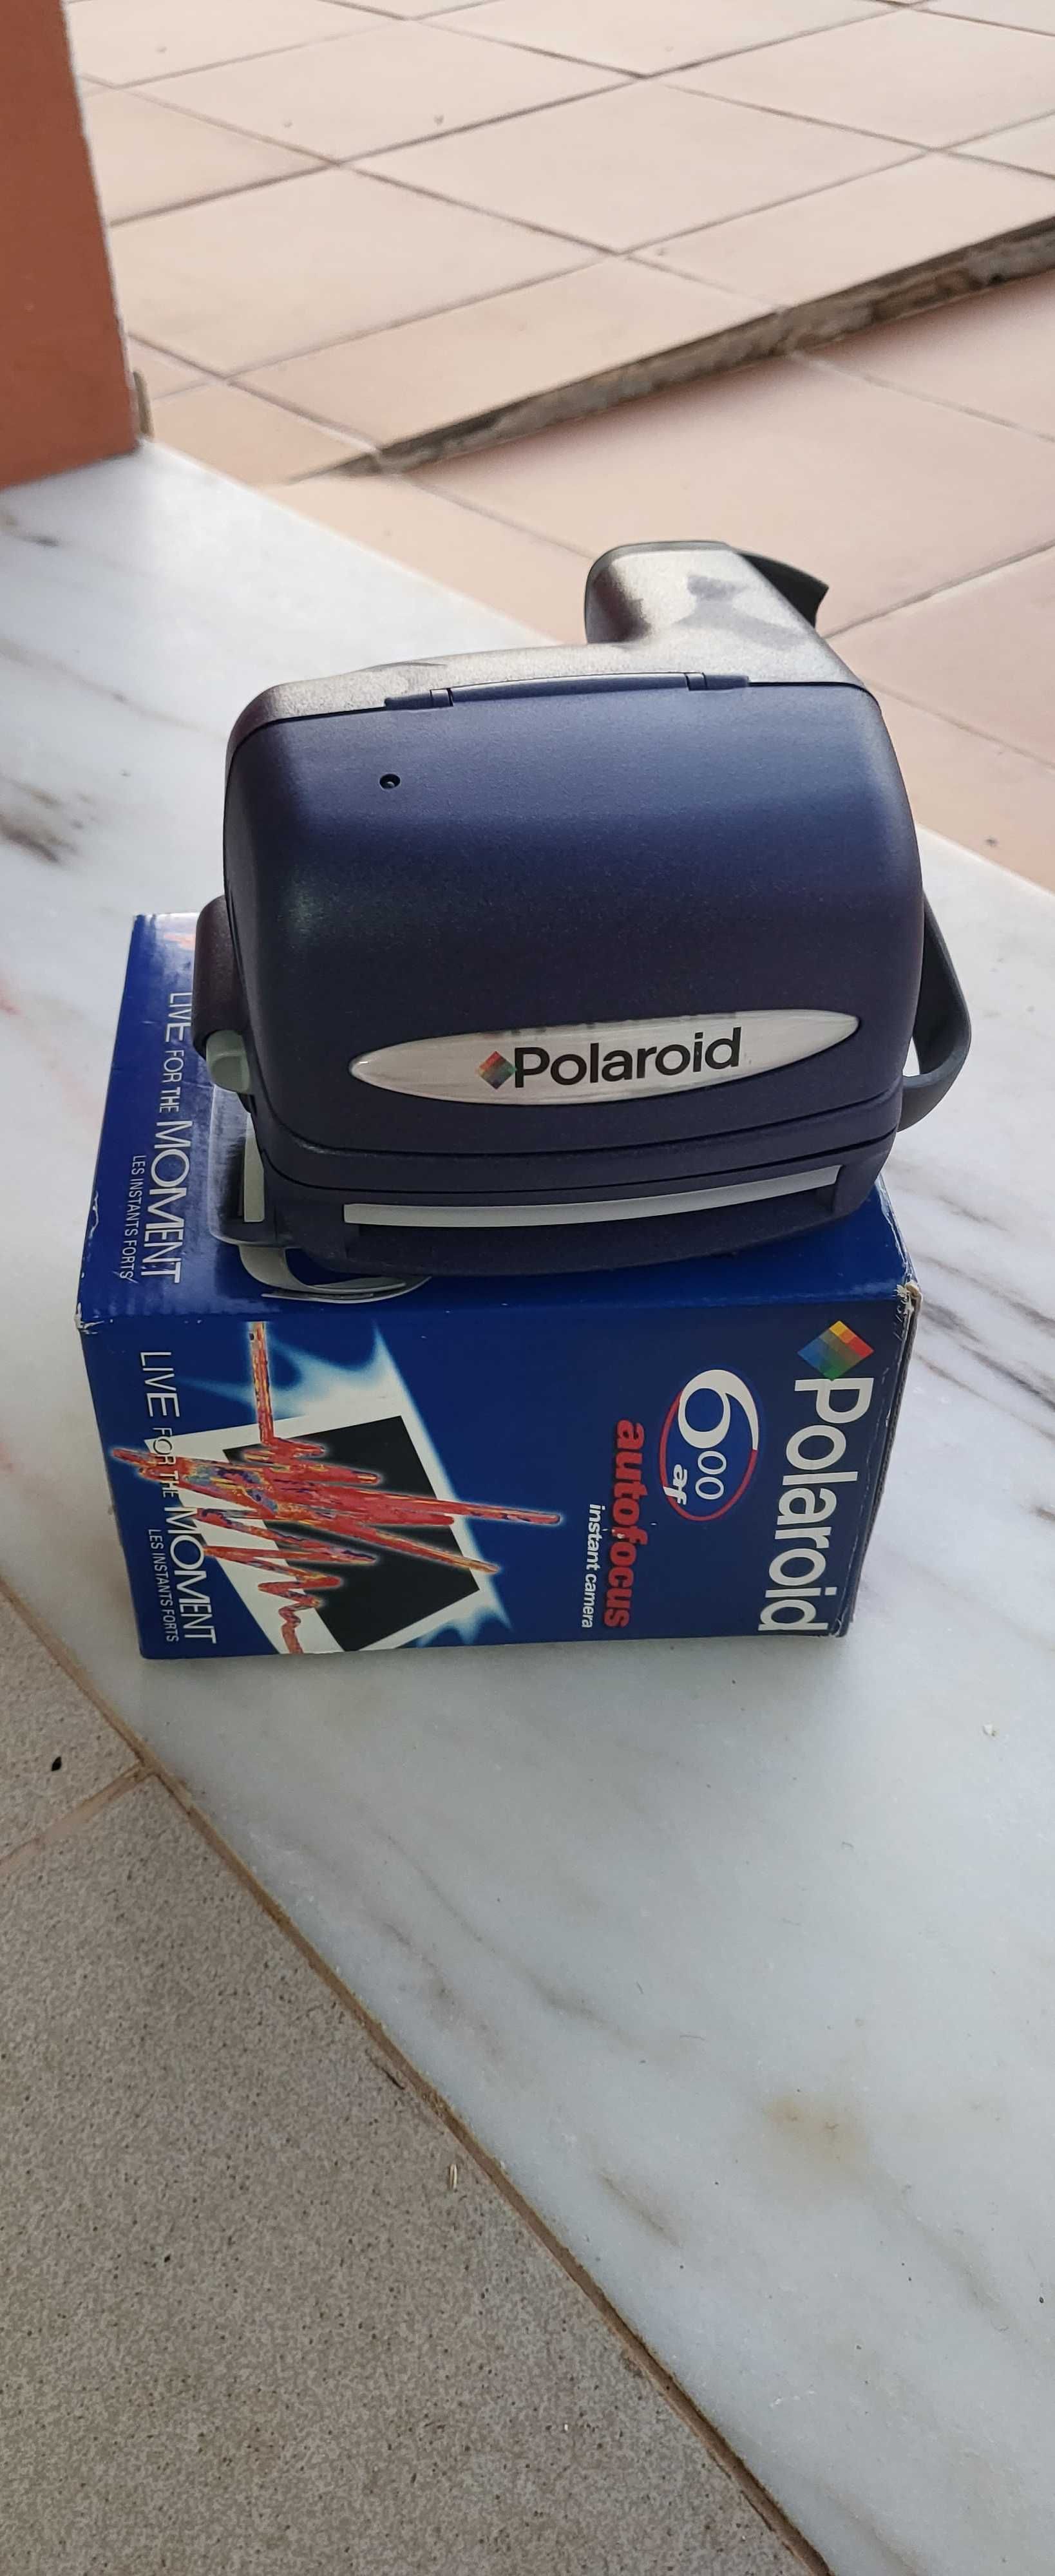 Polaroid 600af com caixa